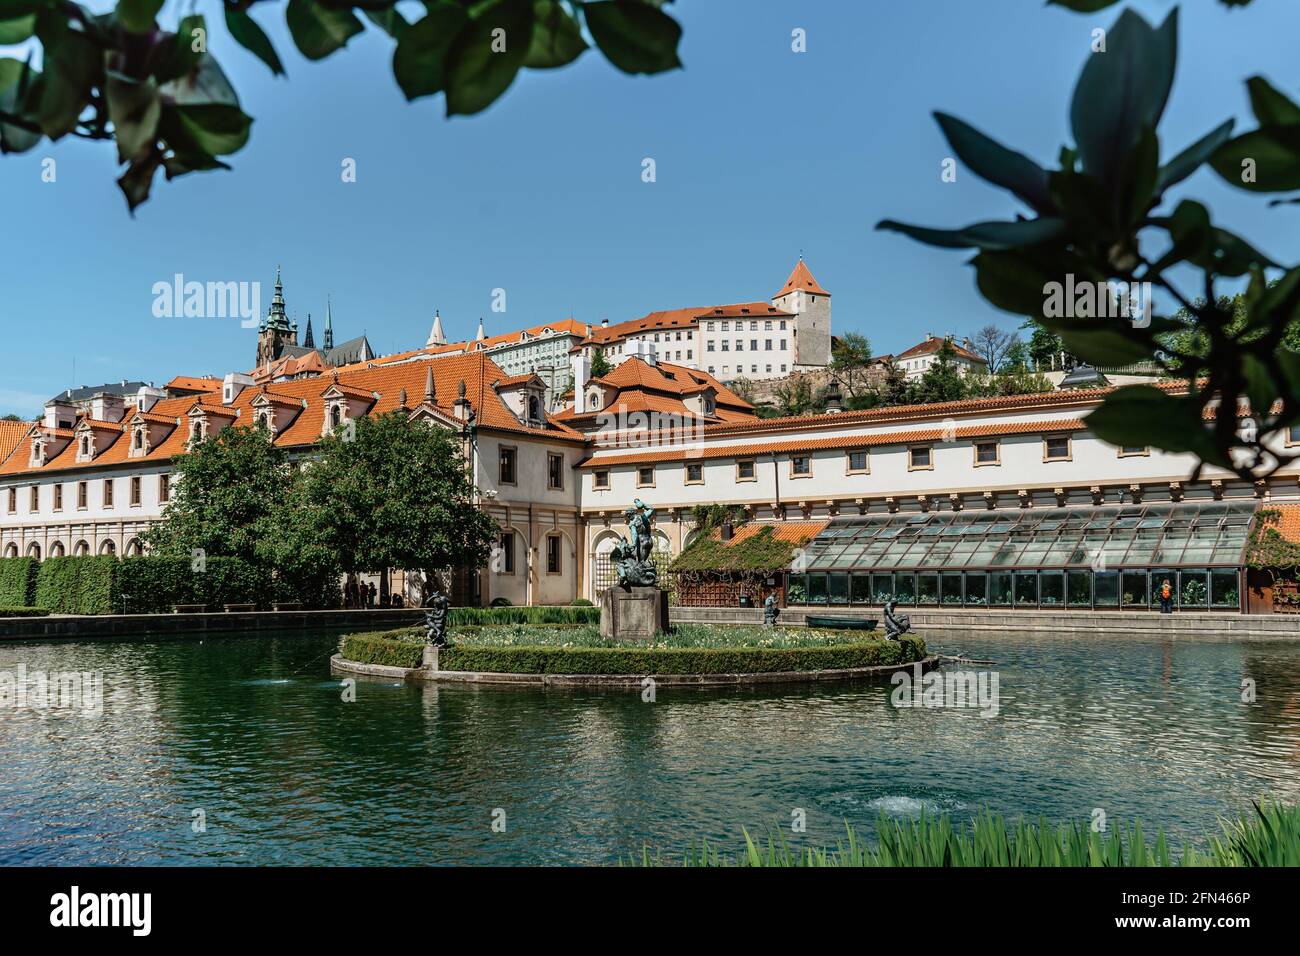 Vue sur le château de Prague depuis Wallenstein, jardin Valdstejn construit en baroque Style avec magnifique étang et fontaine.le jardin est décoré de chêne et magnoli Banque D'Images